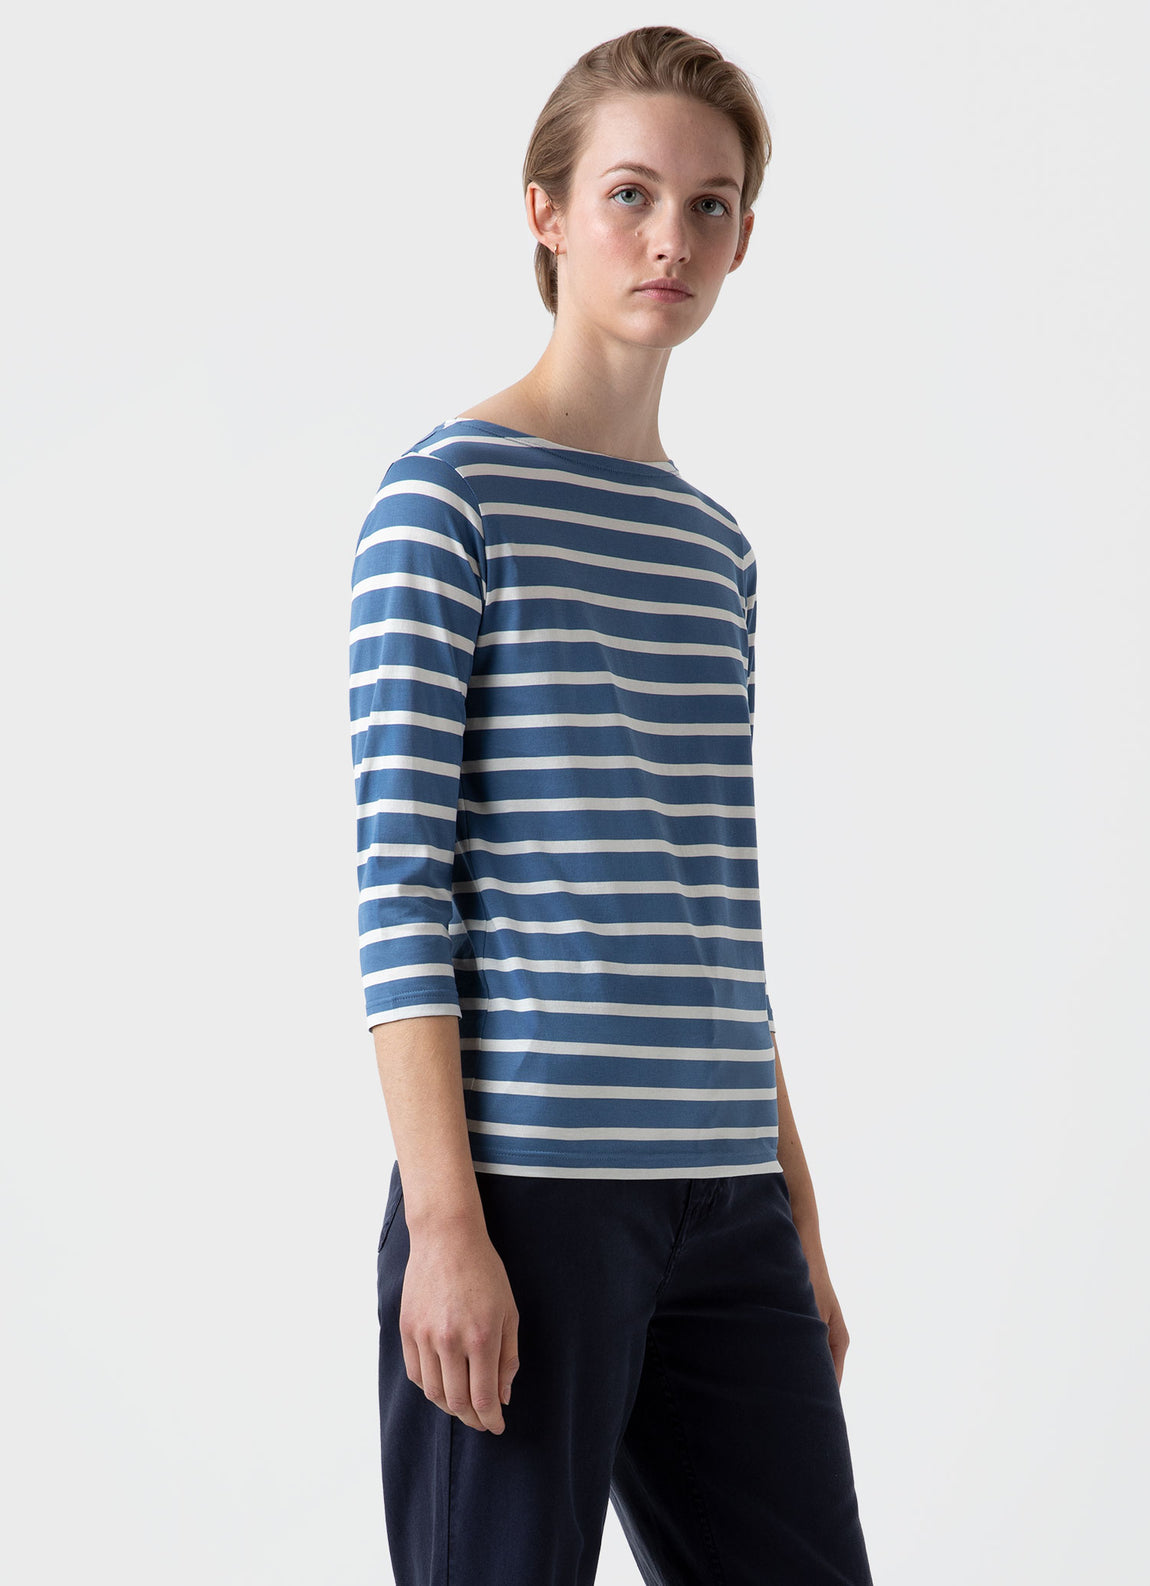 Women's Boat Neck T-shirt in Bluestone/Ecru Breton Stripe